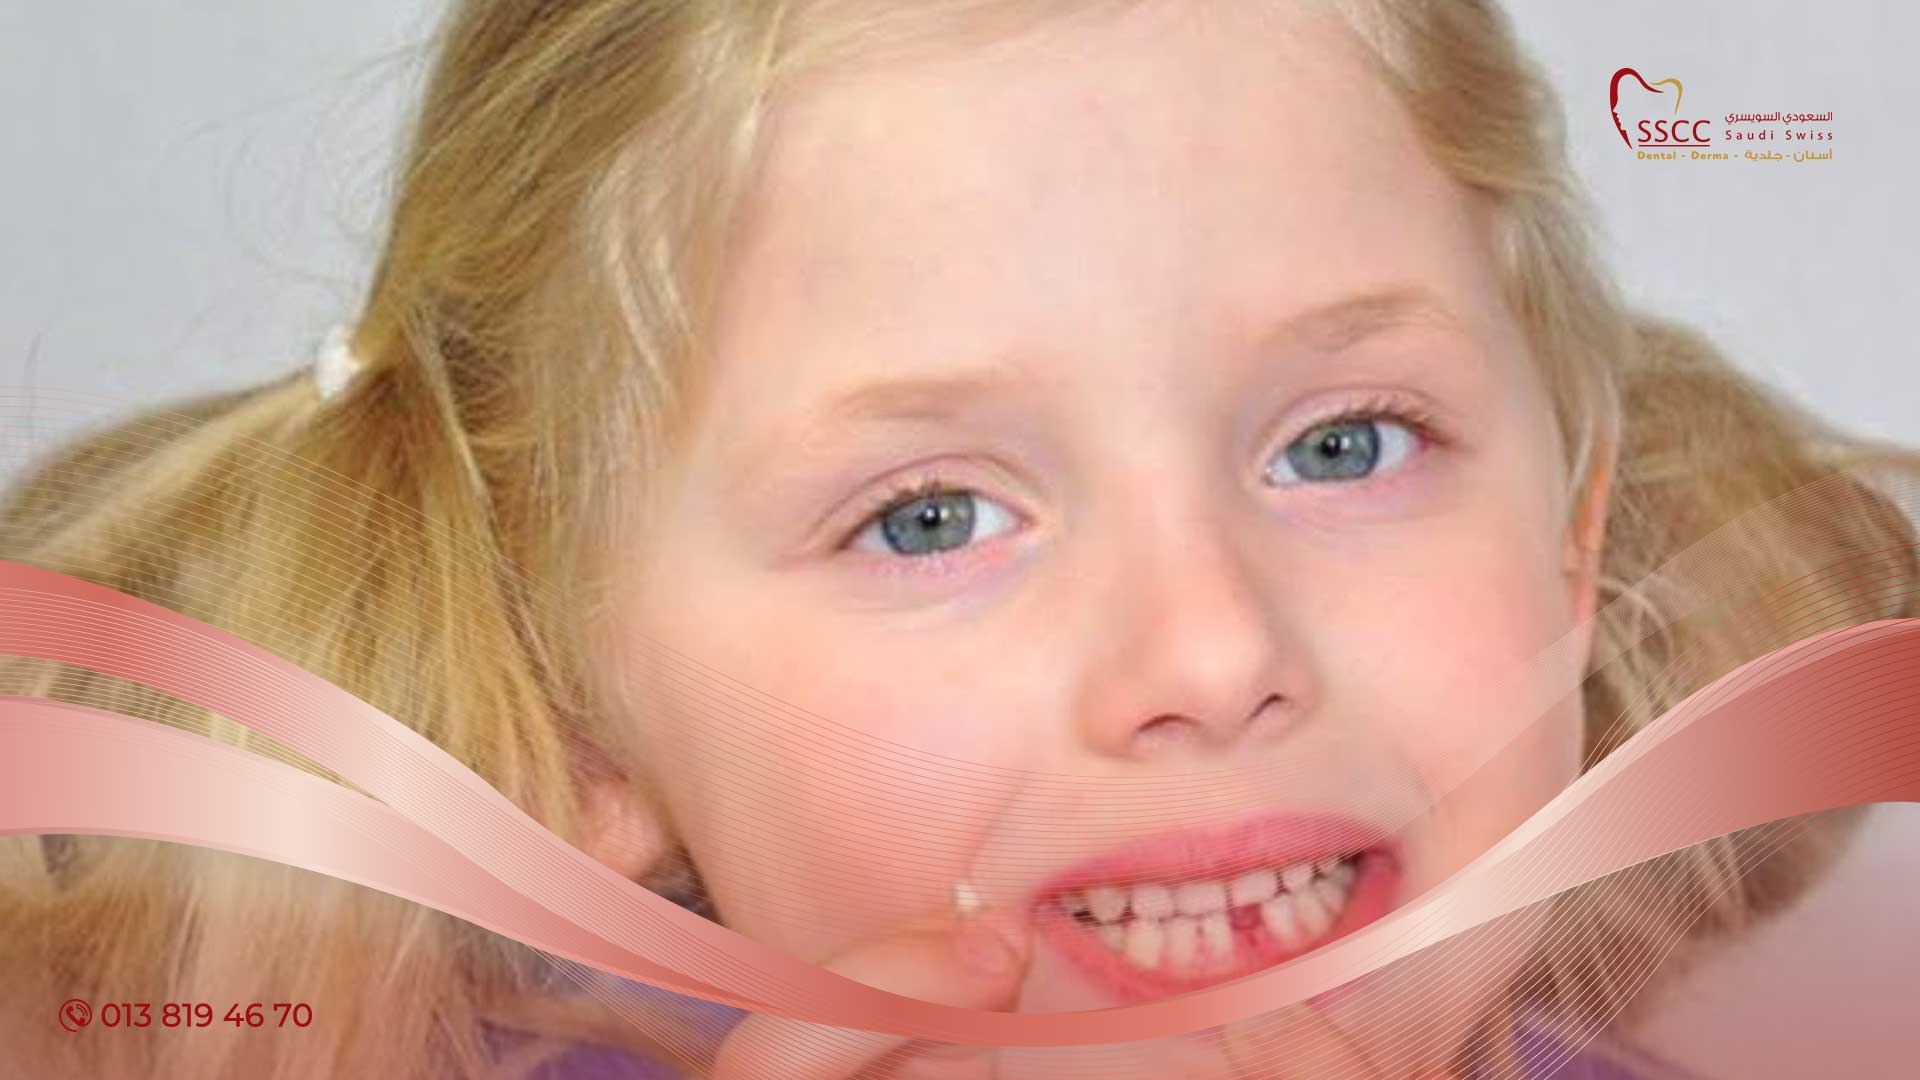 كم عدد الأسنان اللبنية للأطفال